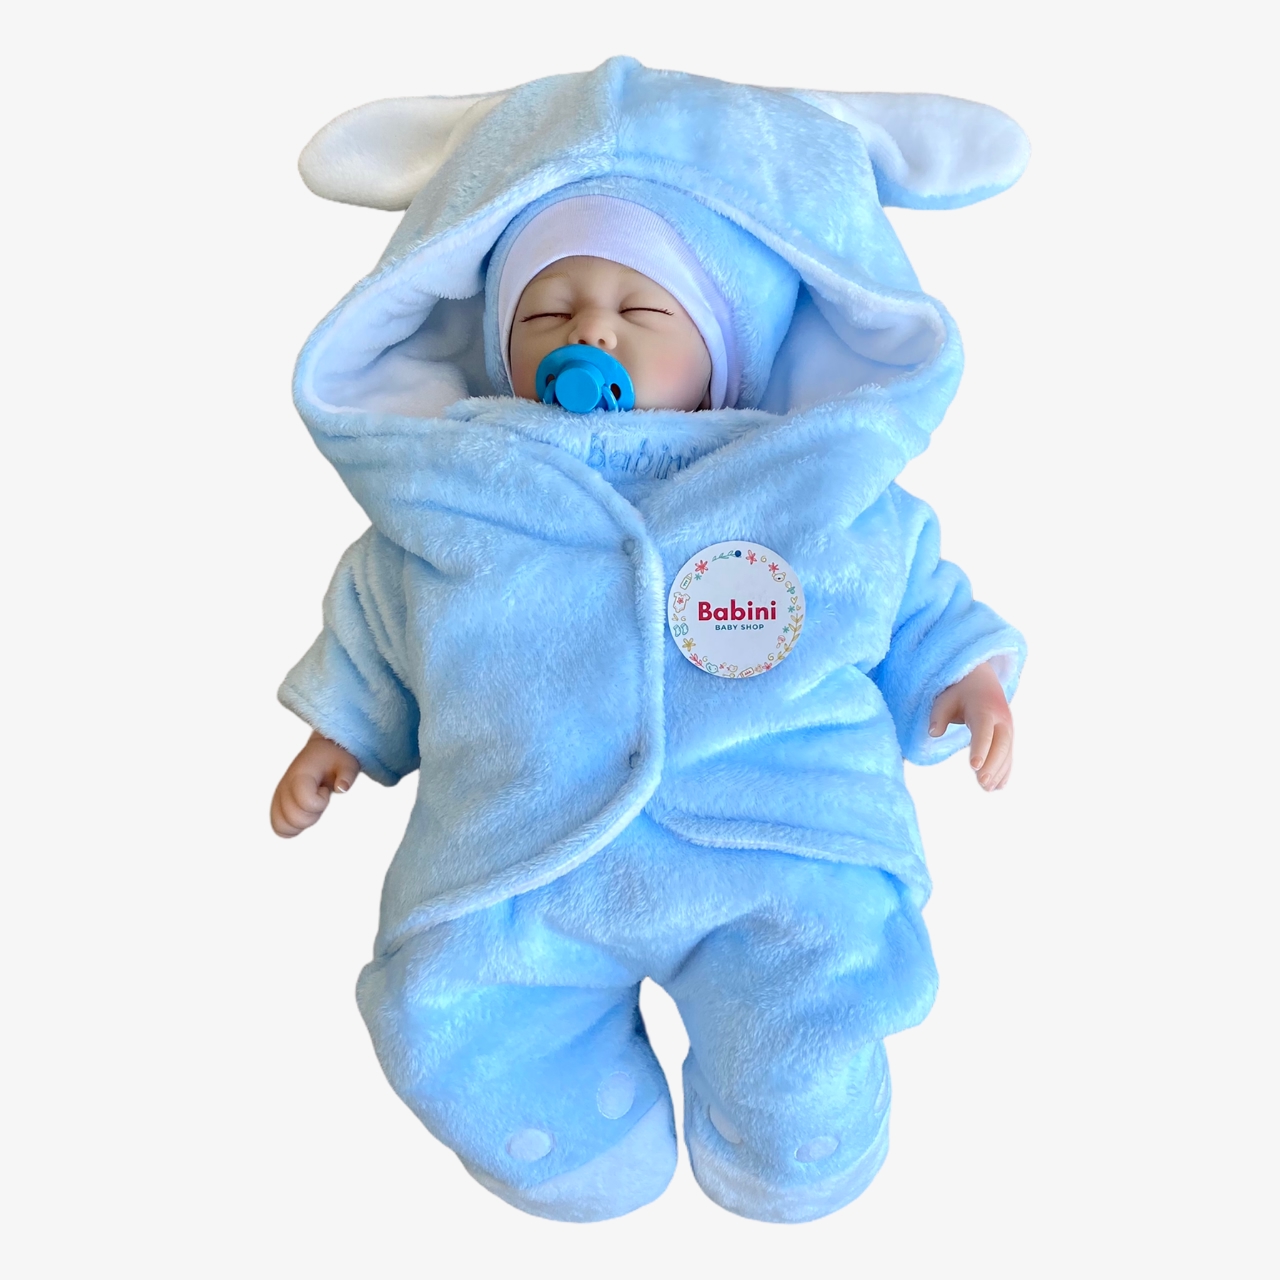 Manta Cobertor En Sleeping Azul y Blanco con Mangas Para Bebe - Babini  Mundo Infantil